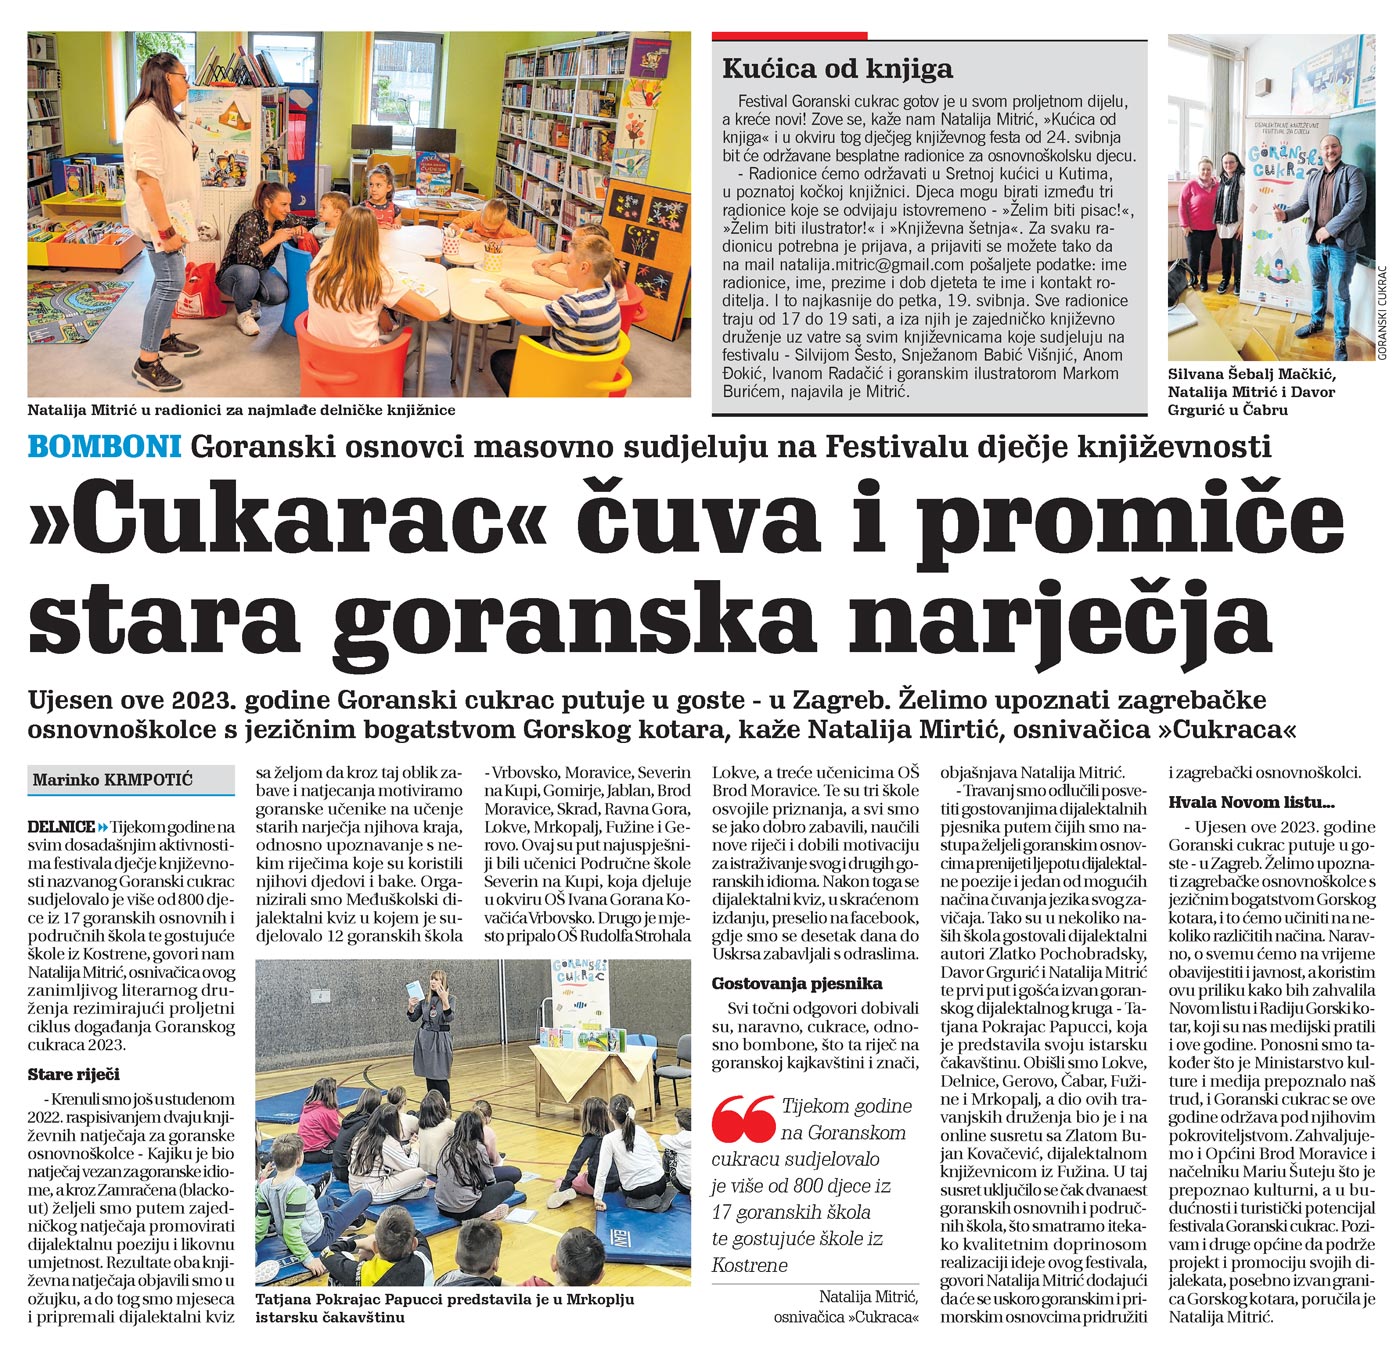 članak, novi list, goranski osnovci masovno sudjeluju na Festivalu dječje književnosti, goranski cukarac